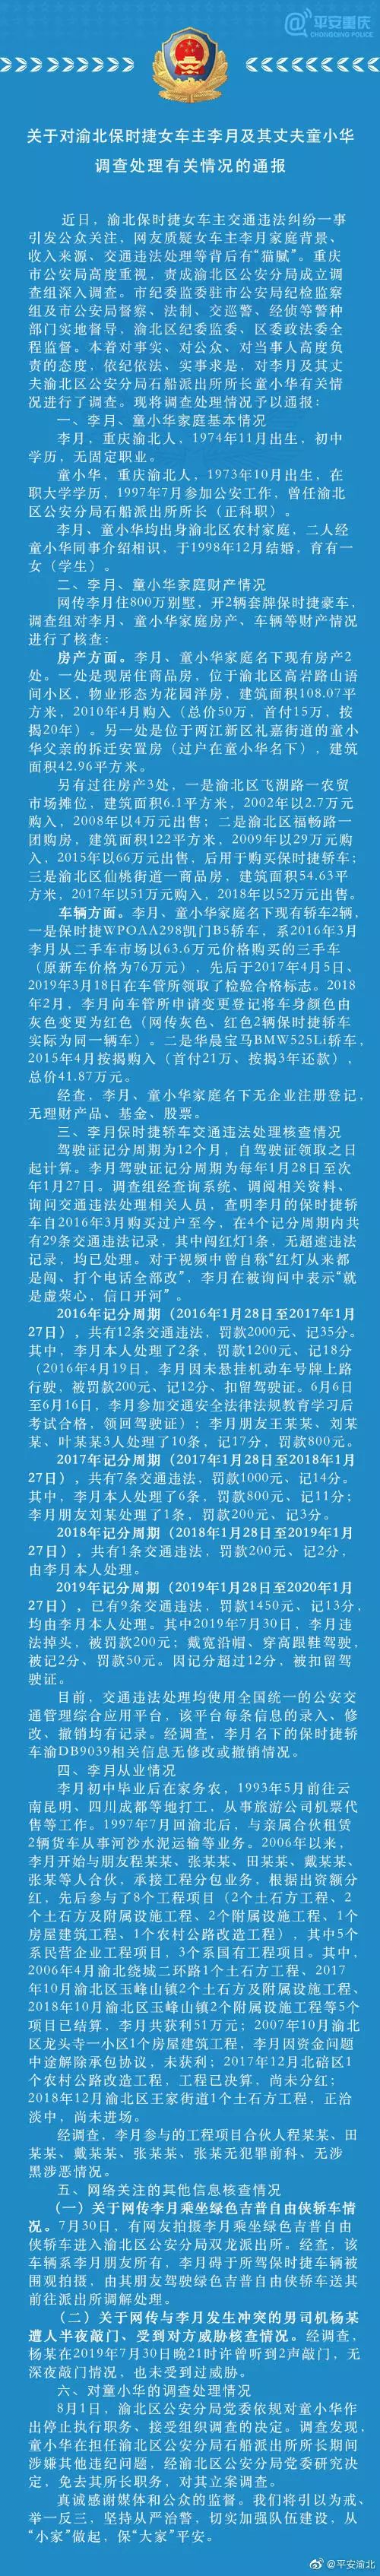 重庆警方通报保时捷女车主及其丈夫童小华调查处理情况731 / 作者:承接水电安装 / 帖子ID:268541